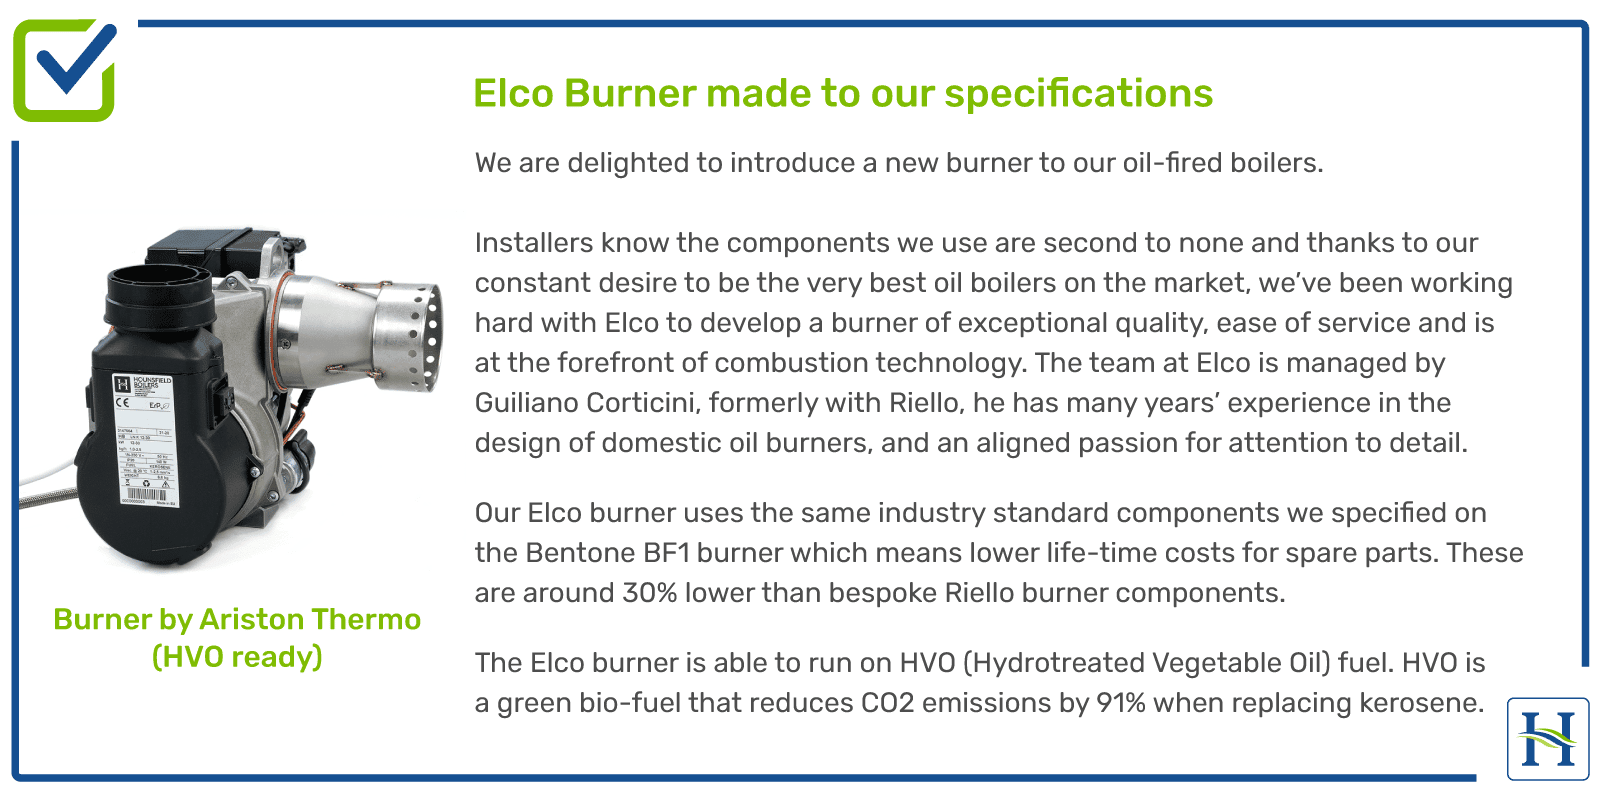 Elco Burner in Hounsfield Boilers